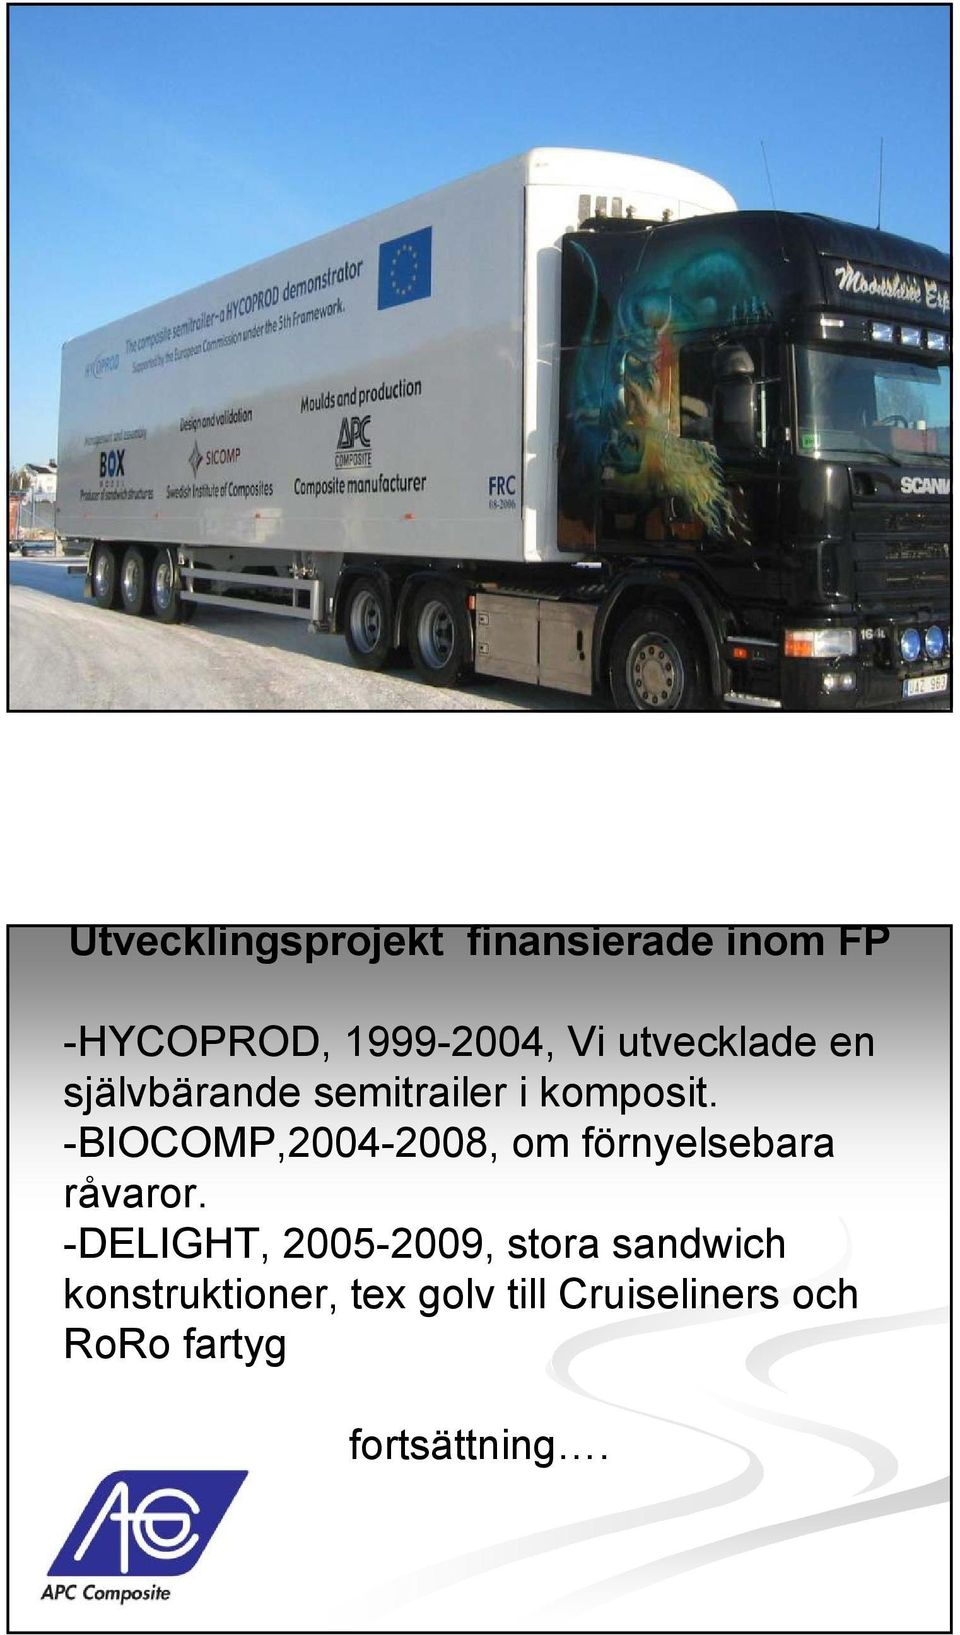 -BIOCOMP,2004-2008, om förnyelsebara råvaror.